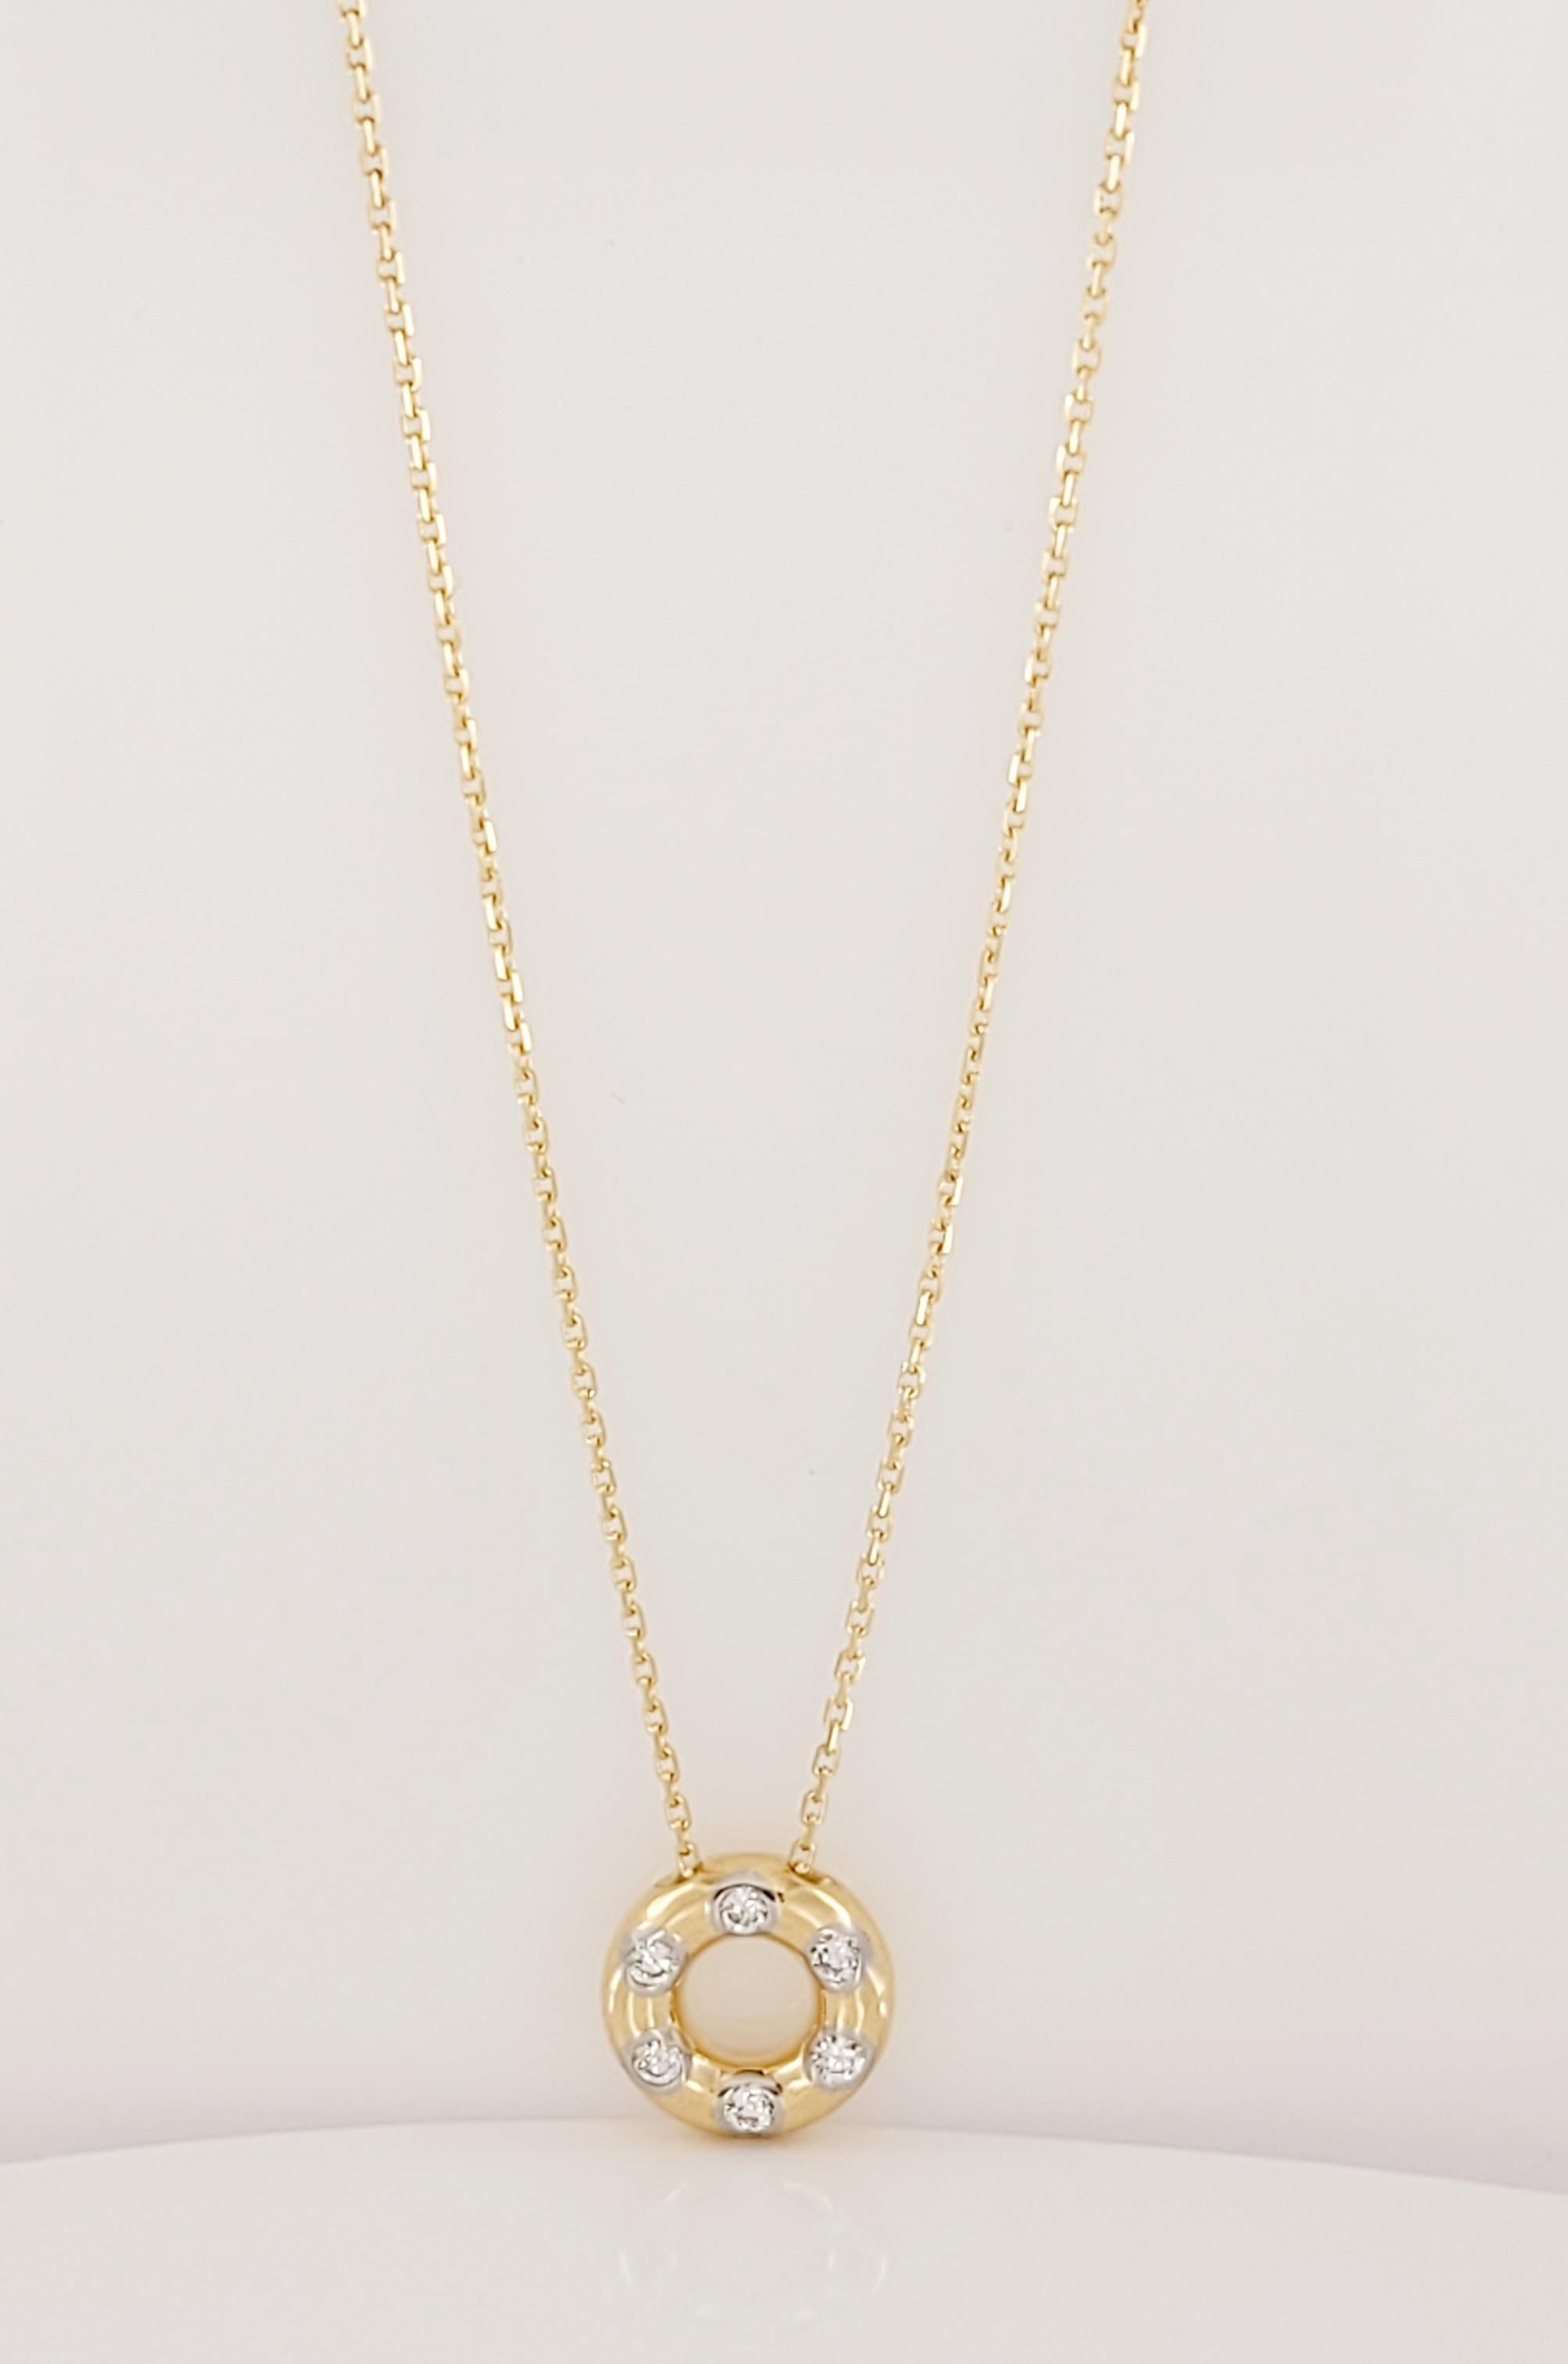 Tiffany &Co Etoile - Collier à pendentifs
Métal Or jaune 18K 
Poids 6.4gr 
Chaîne de 16'' de long
Pendentif : 12,3 mm de diamètre
Diamant 6 diamants ronds de taille brillant, poids total en carats .18
La clarté du diamant est VS. Grade de couleur